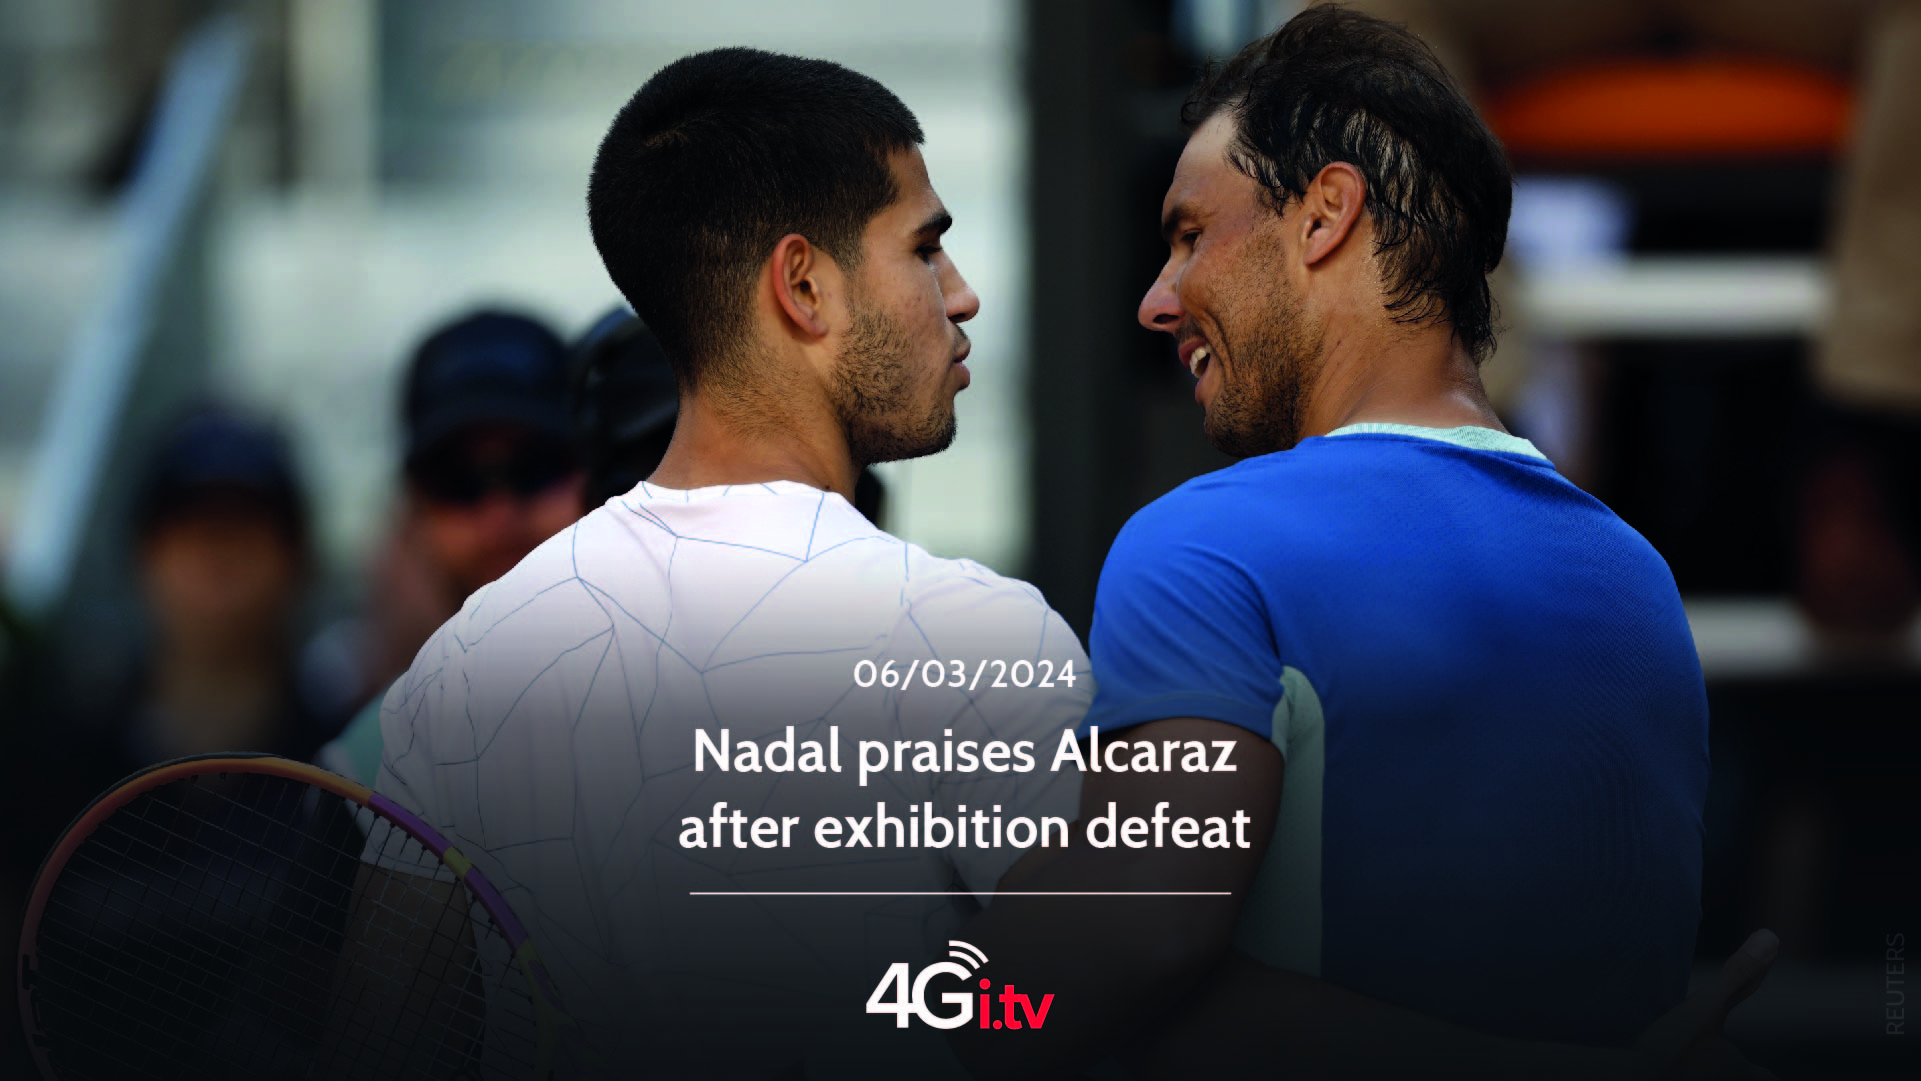 Подробнее о статье Nadal praises Alcaraz after exhibition defeat